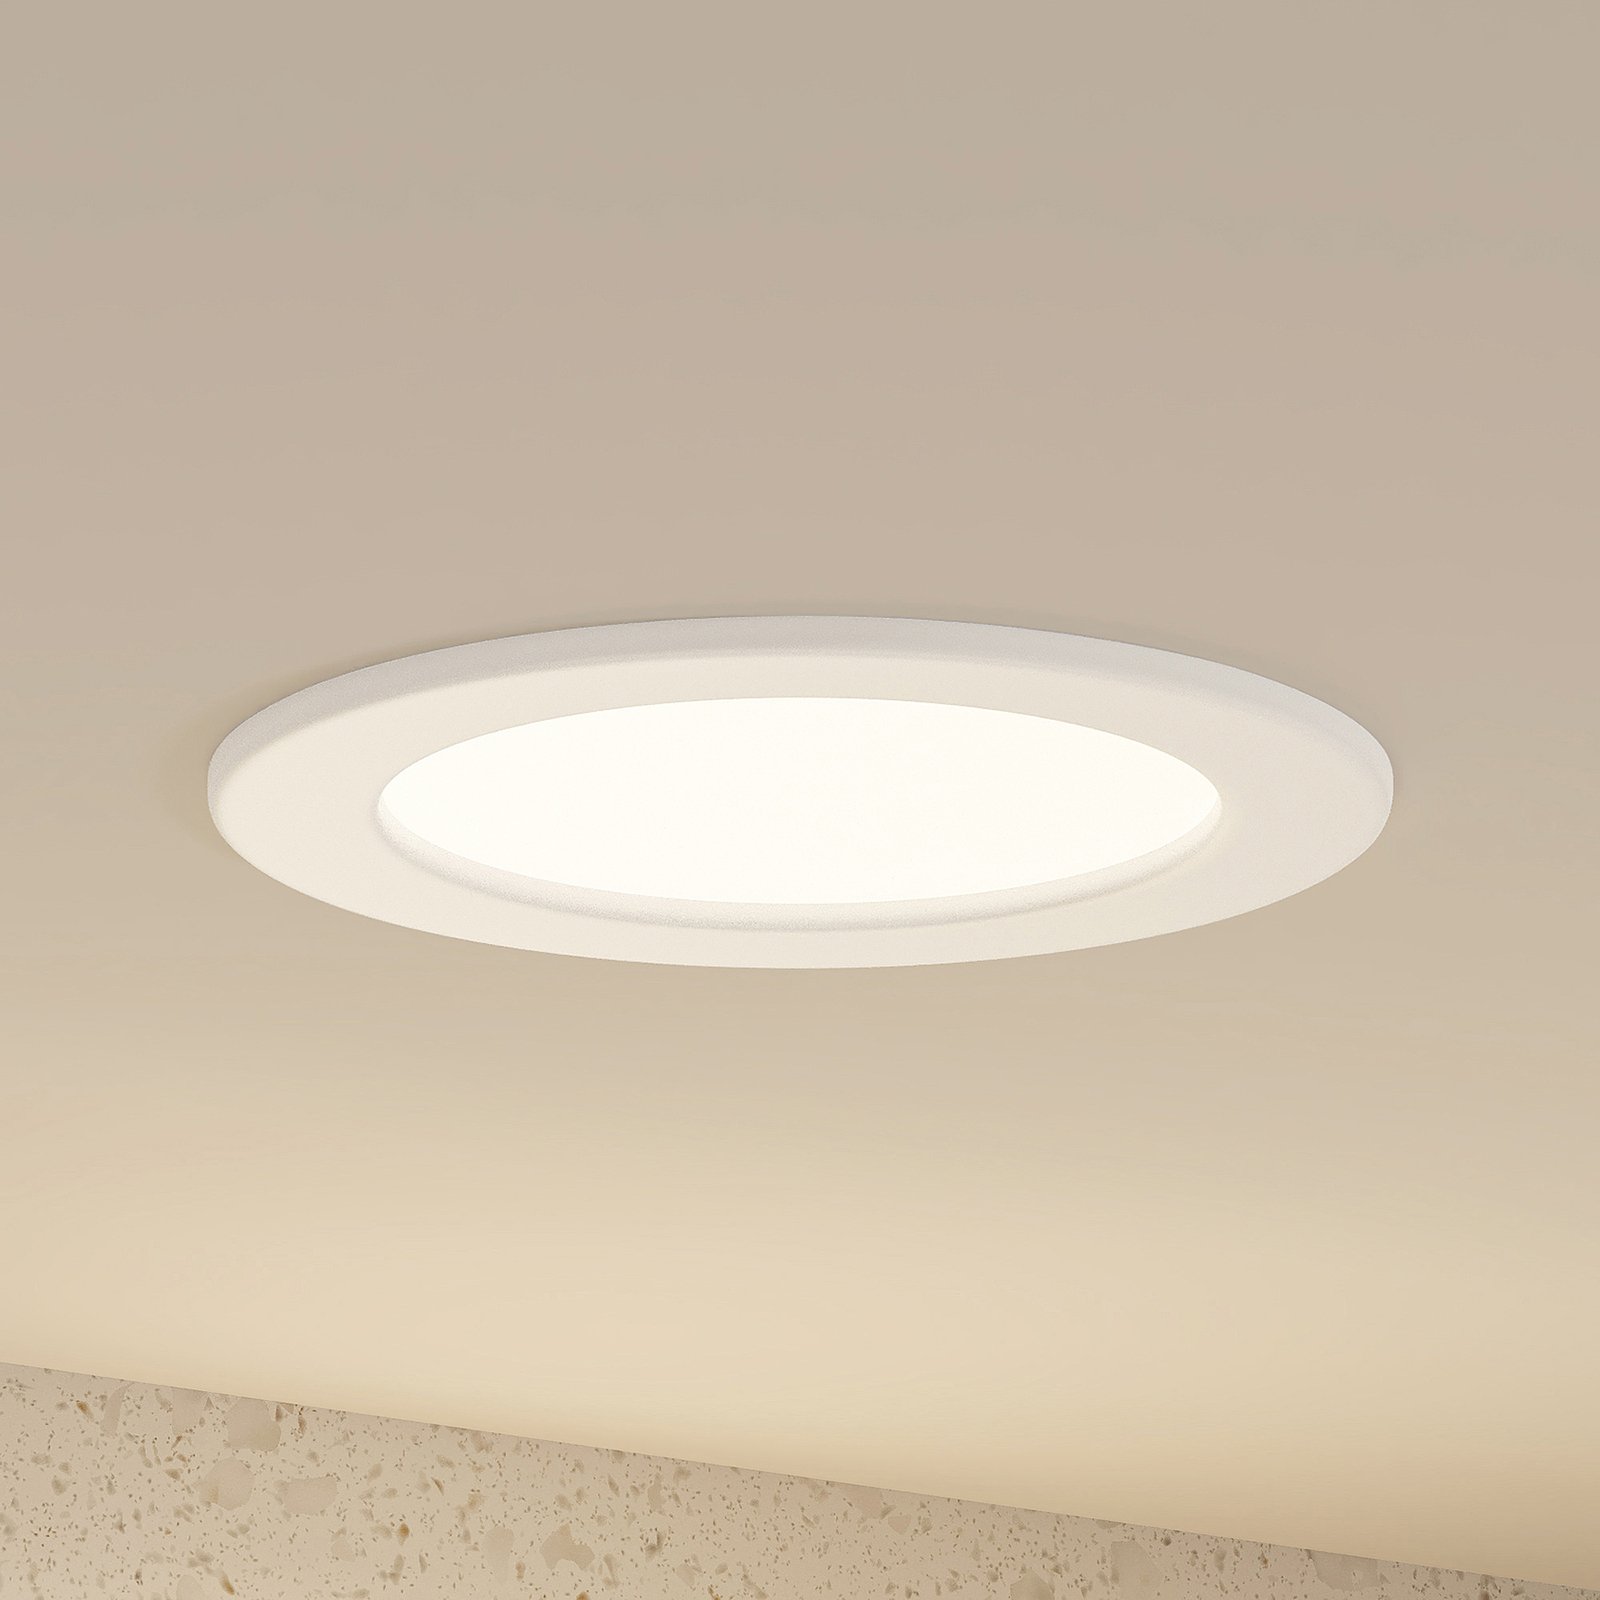 Prios Cadance LED-Einbaulampe weiß 17 cm 10er-Set